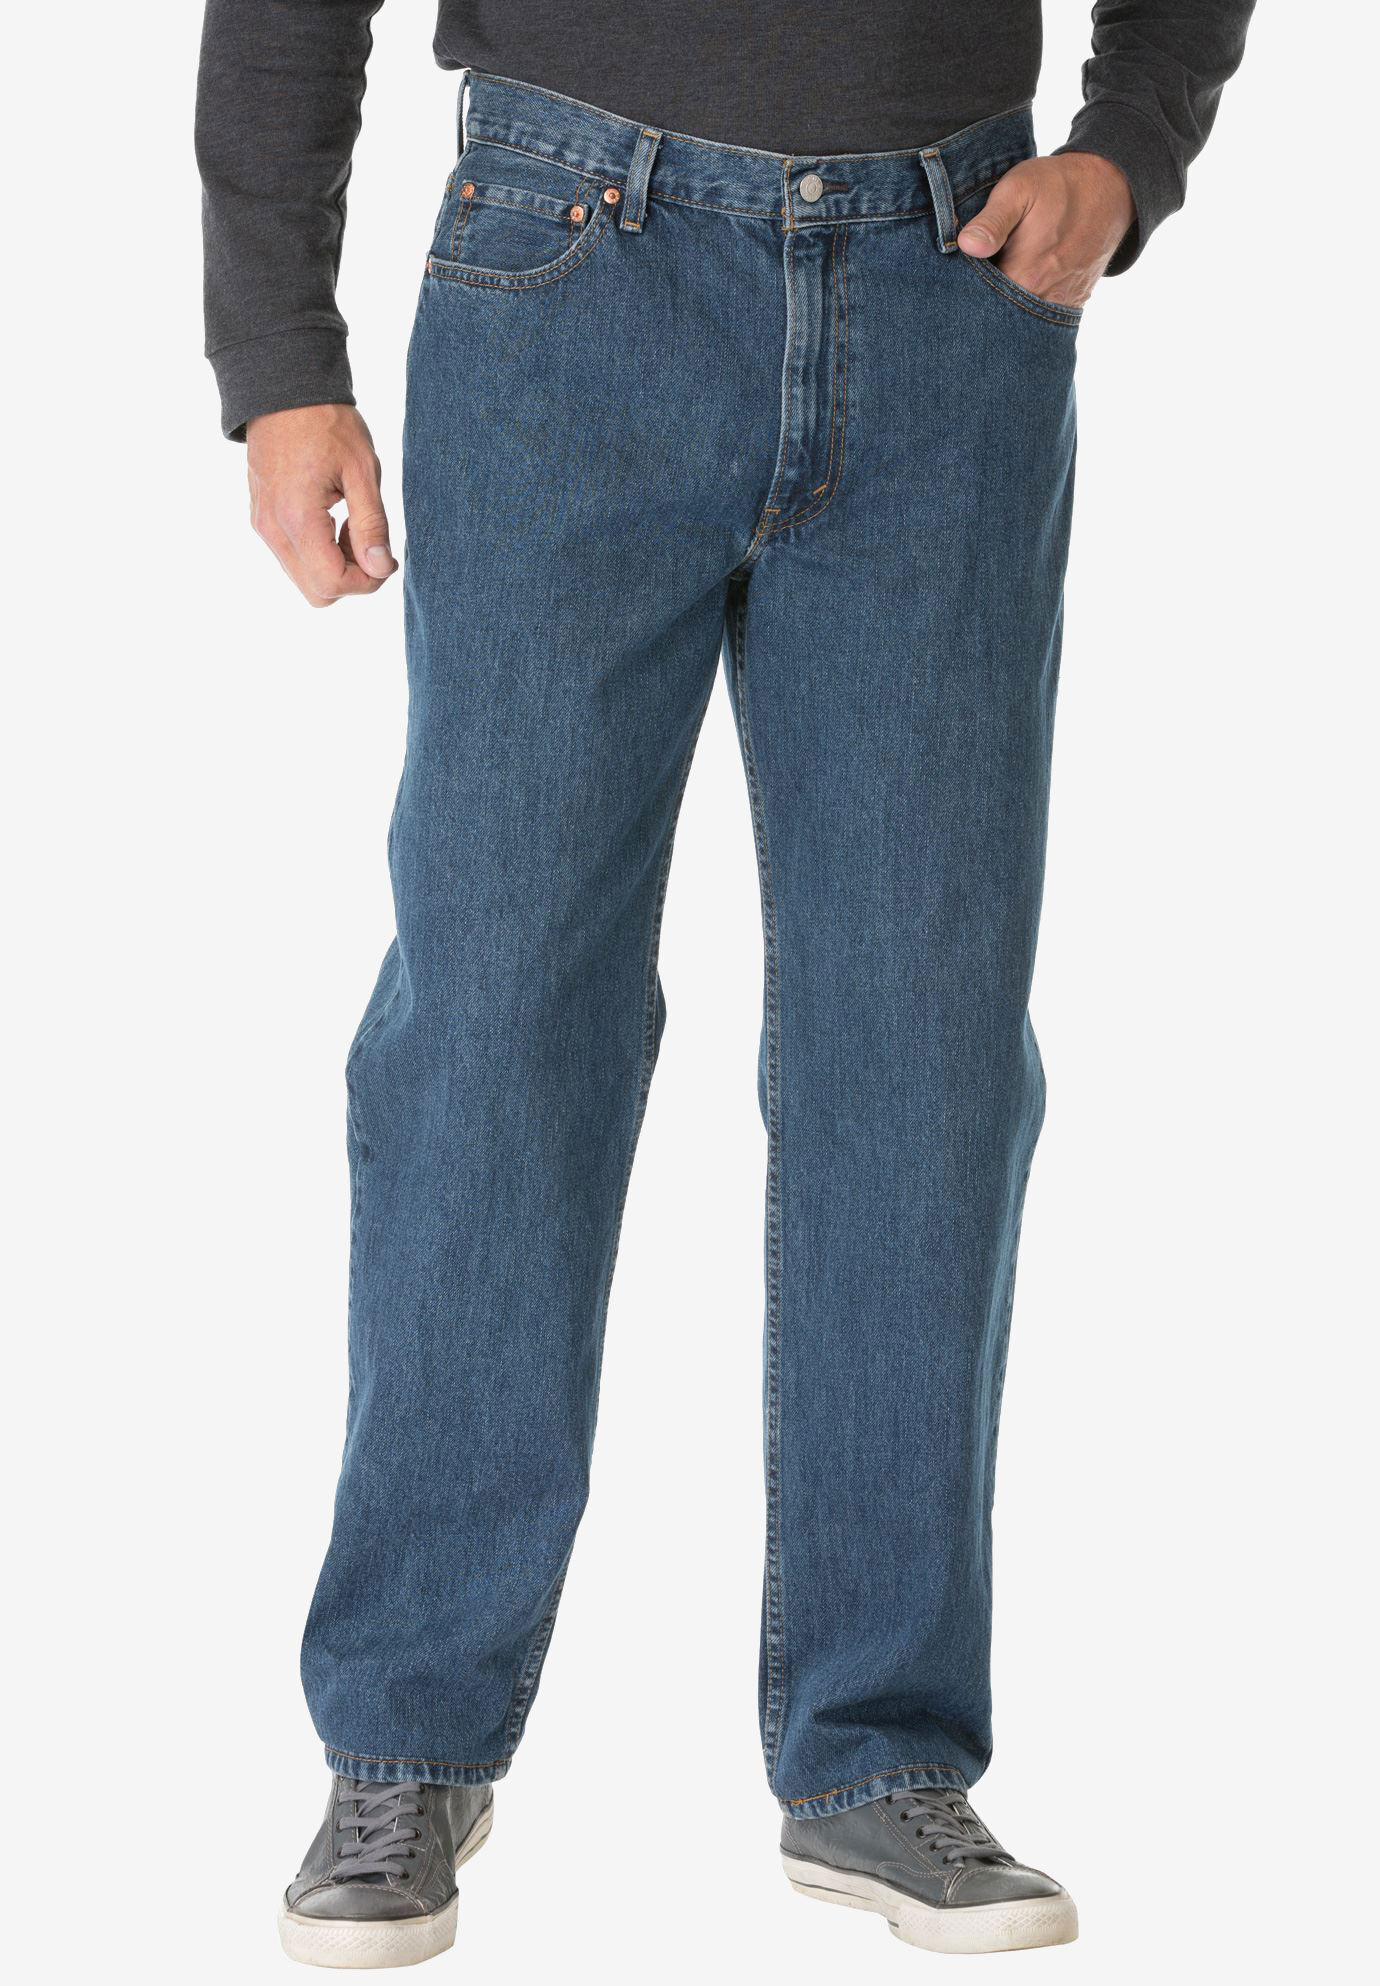 size 46 levis jeans